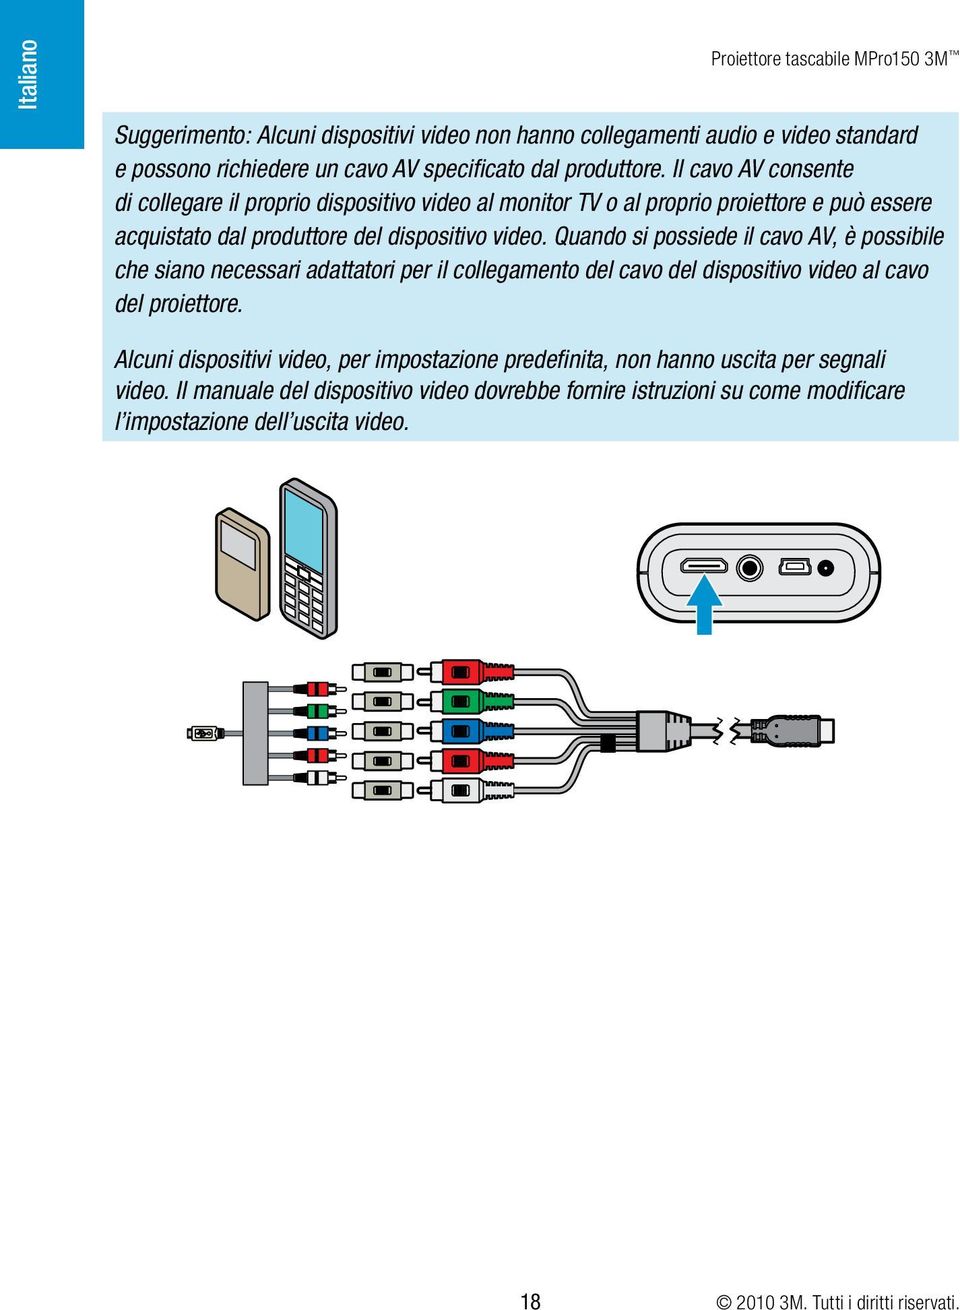 Quando si possiede il cavo AV, è possibile che siano necessari adattatori per il collegamento del cavo del dispositivo video al cavo del proiettore.